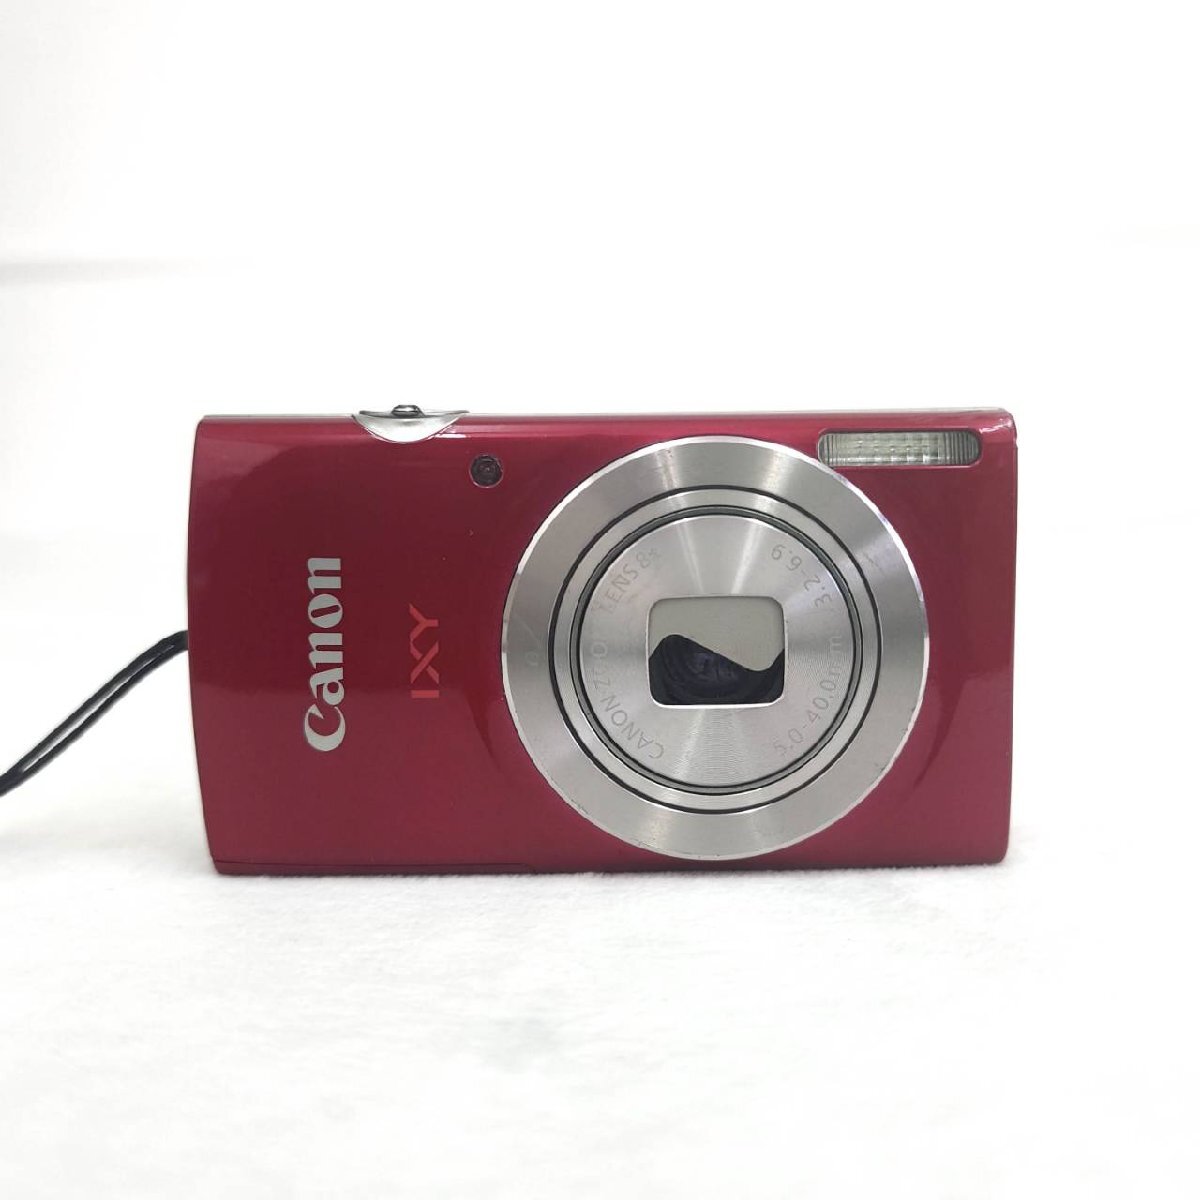 Canon キャノン IXY180 PC2275 レッド コンパクトデジタルカメラ デジカメの画像1